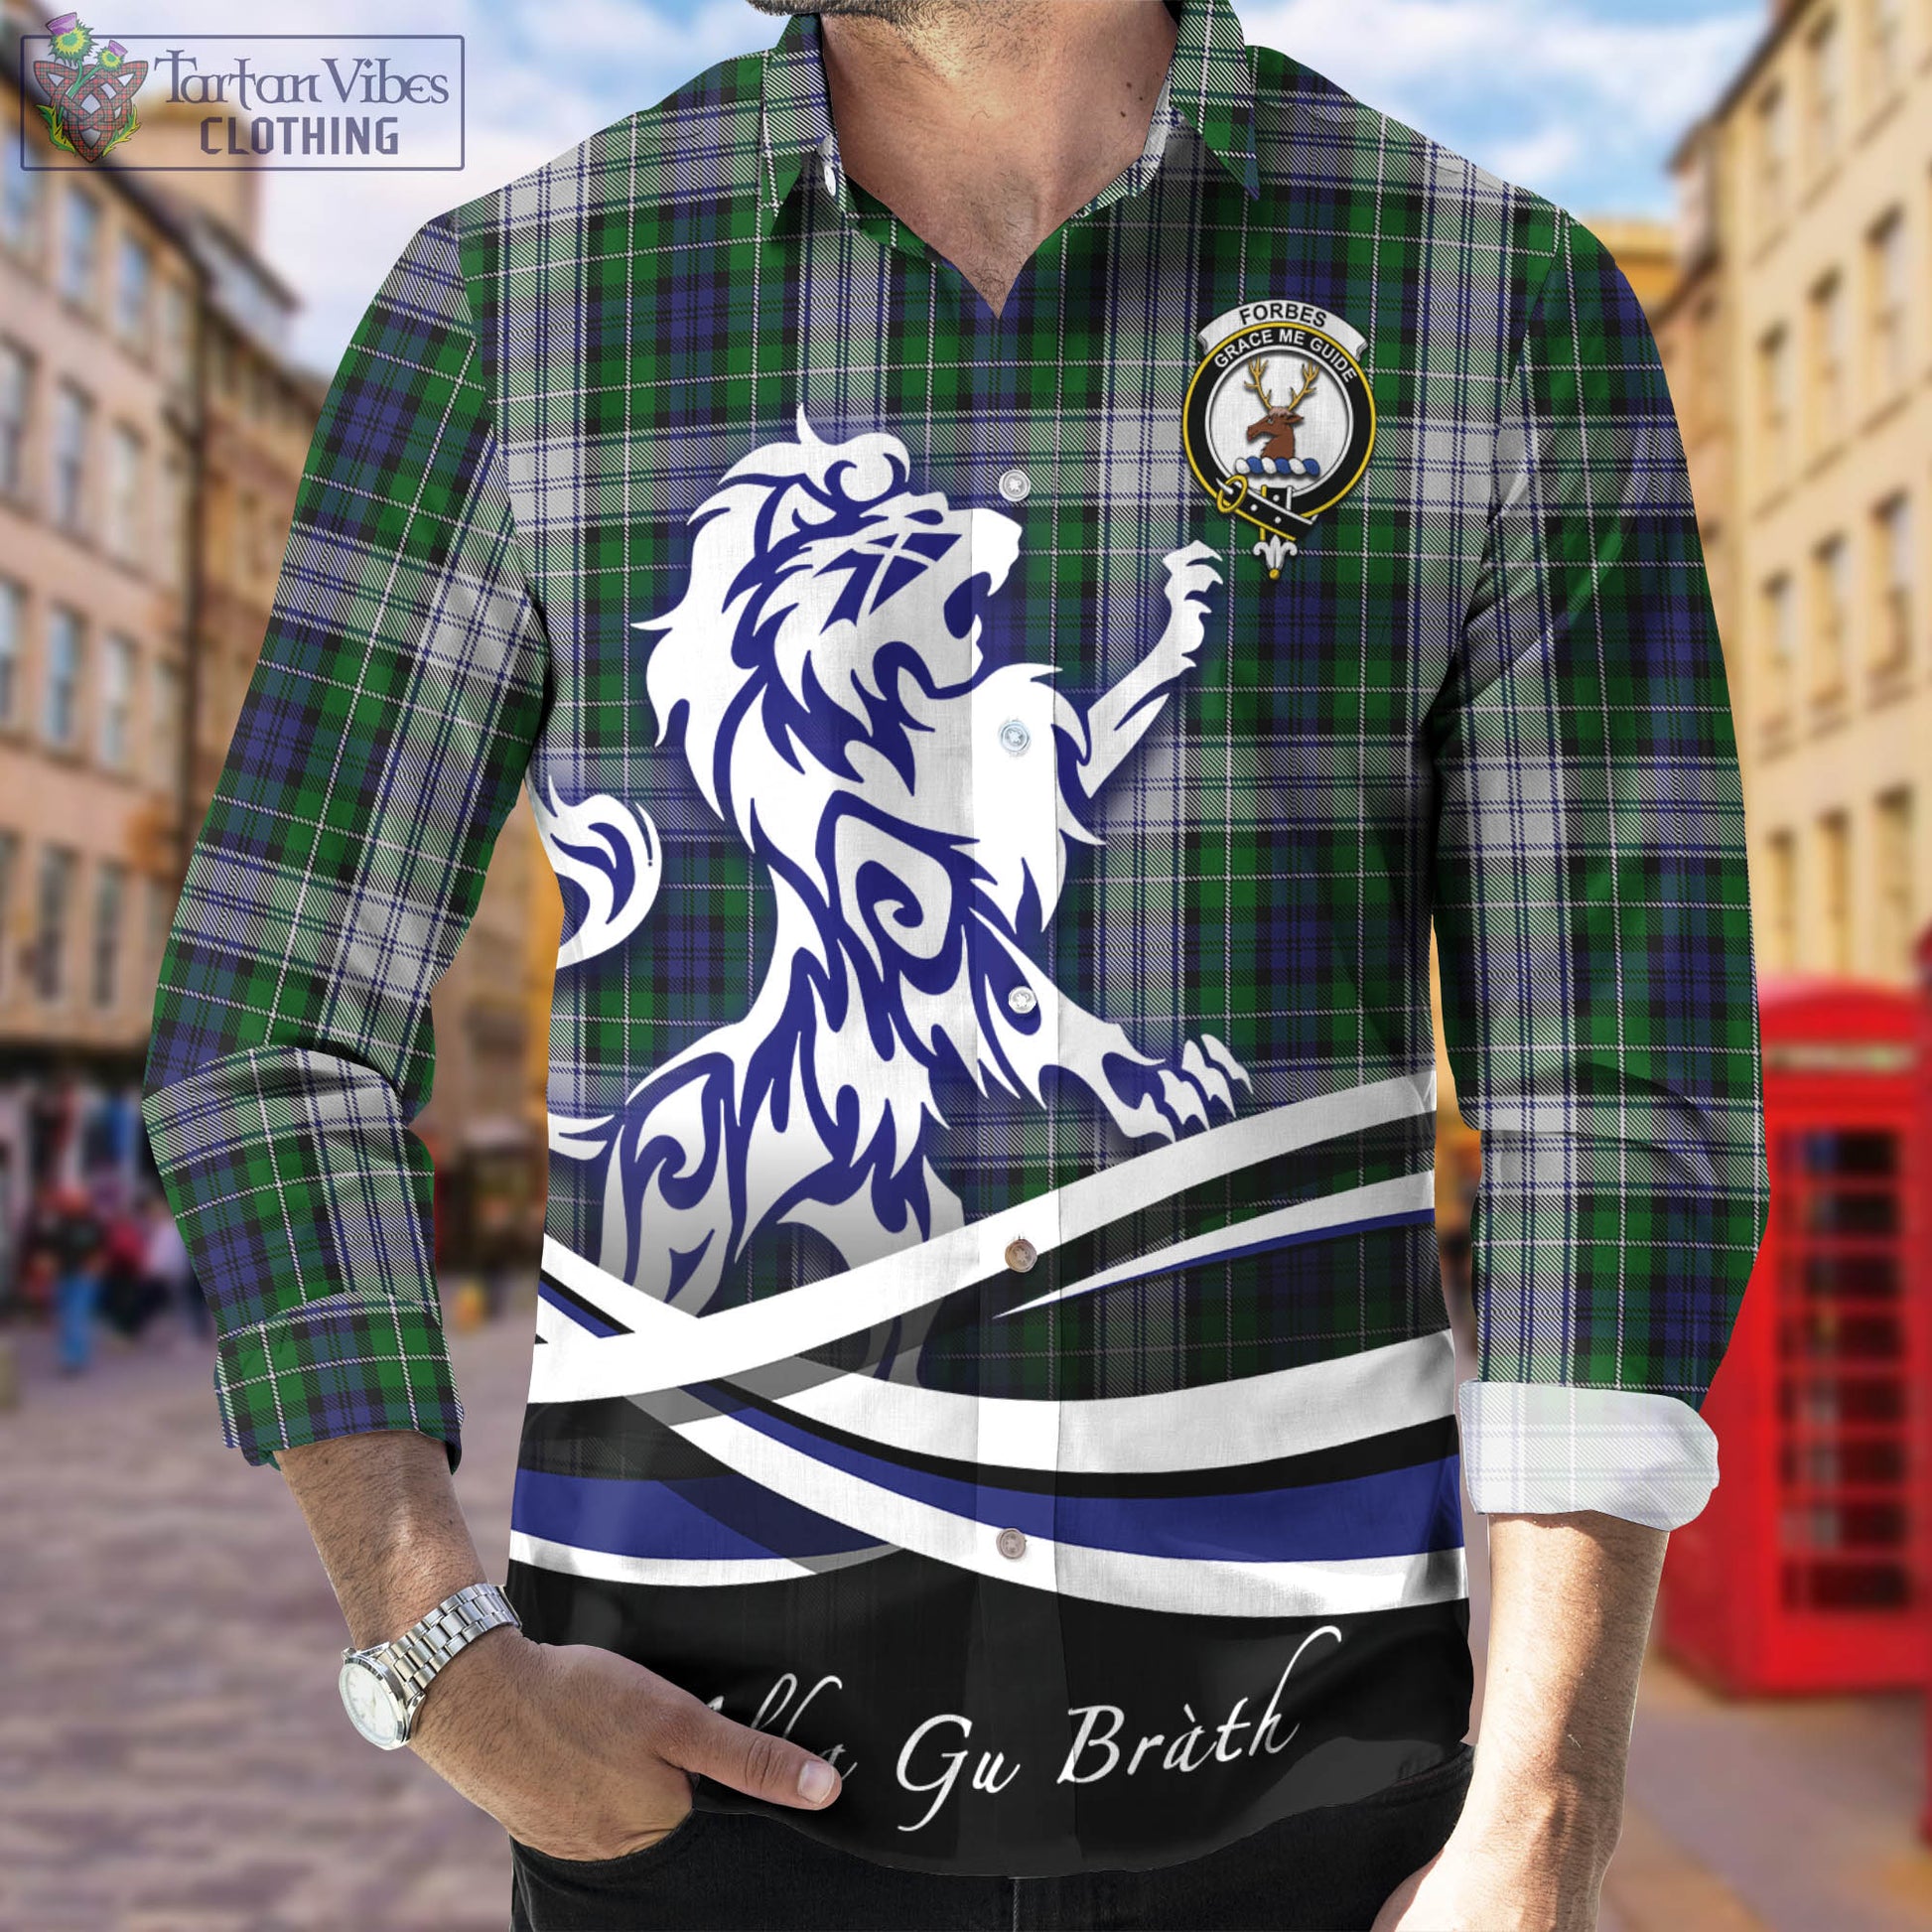 forbes-dress-tartan-long-sleeve-button-up-shirt-with-alba-gu-brath-regal-lion-emblem